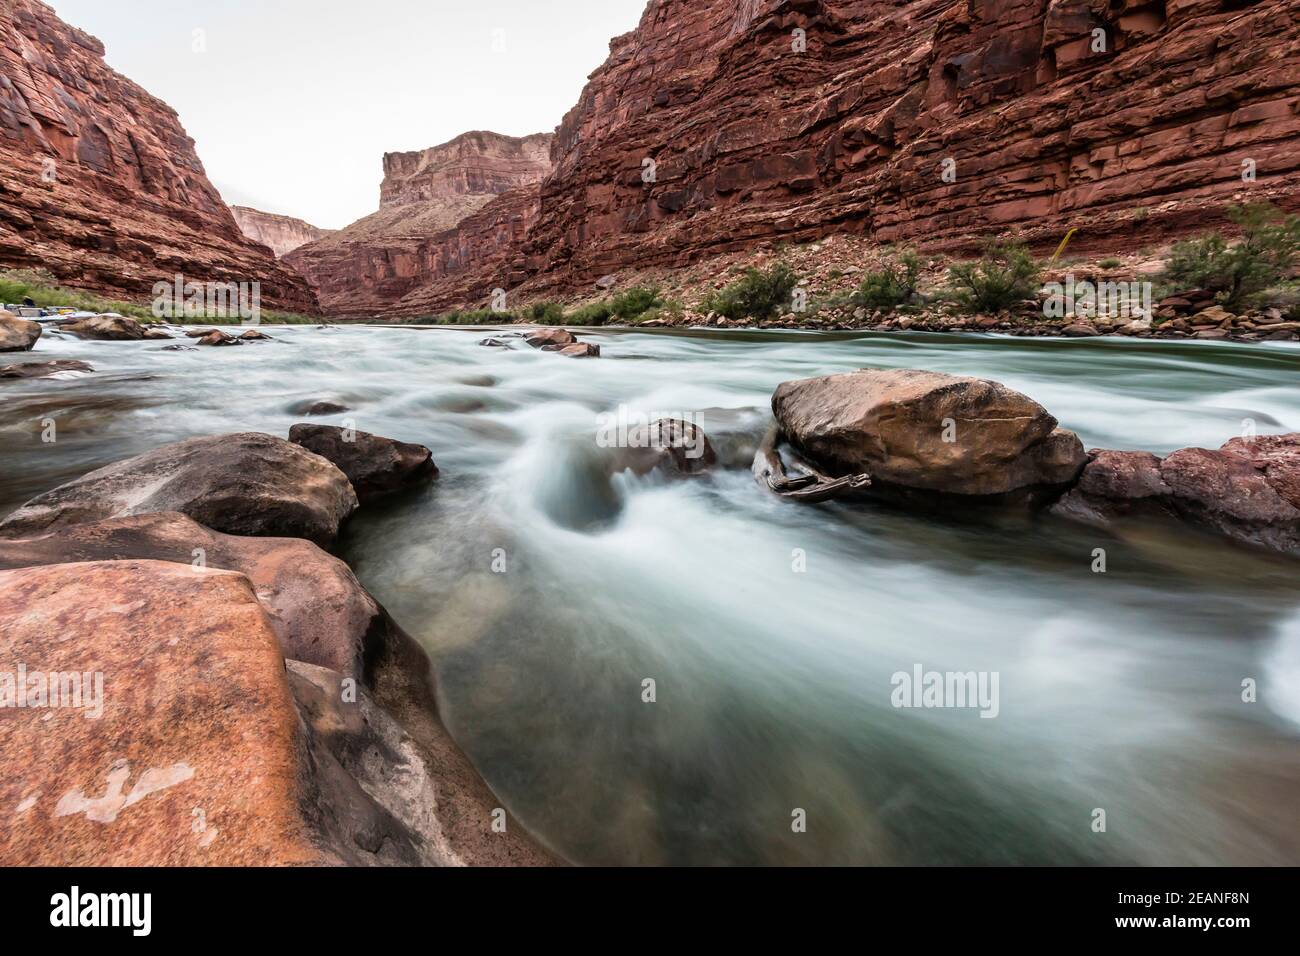 Rapids on the Colorado River, Marble Canyon, parc national du Grand Canyon, site classé au patrimoine mondial de l'UNESCO, Arizona, États-Unis d'Amérique, Amérique du Nord Banque D'Images